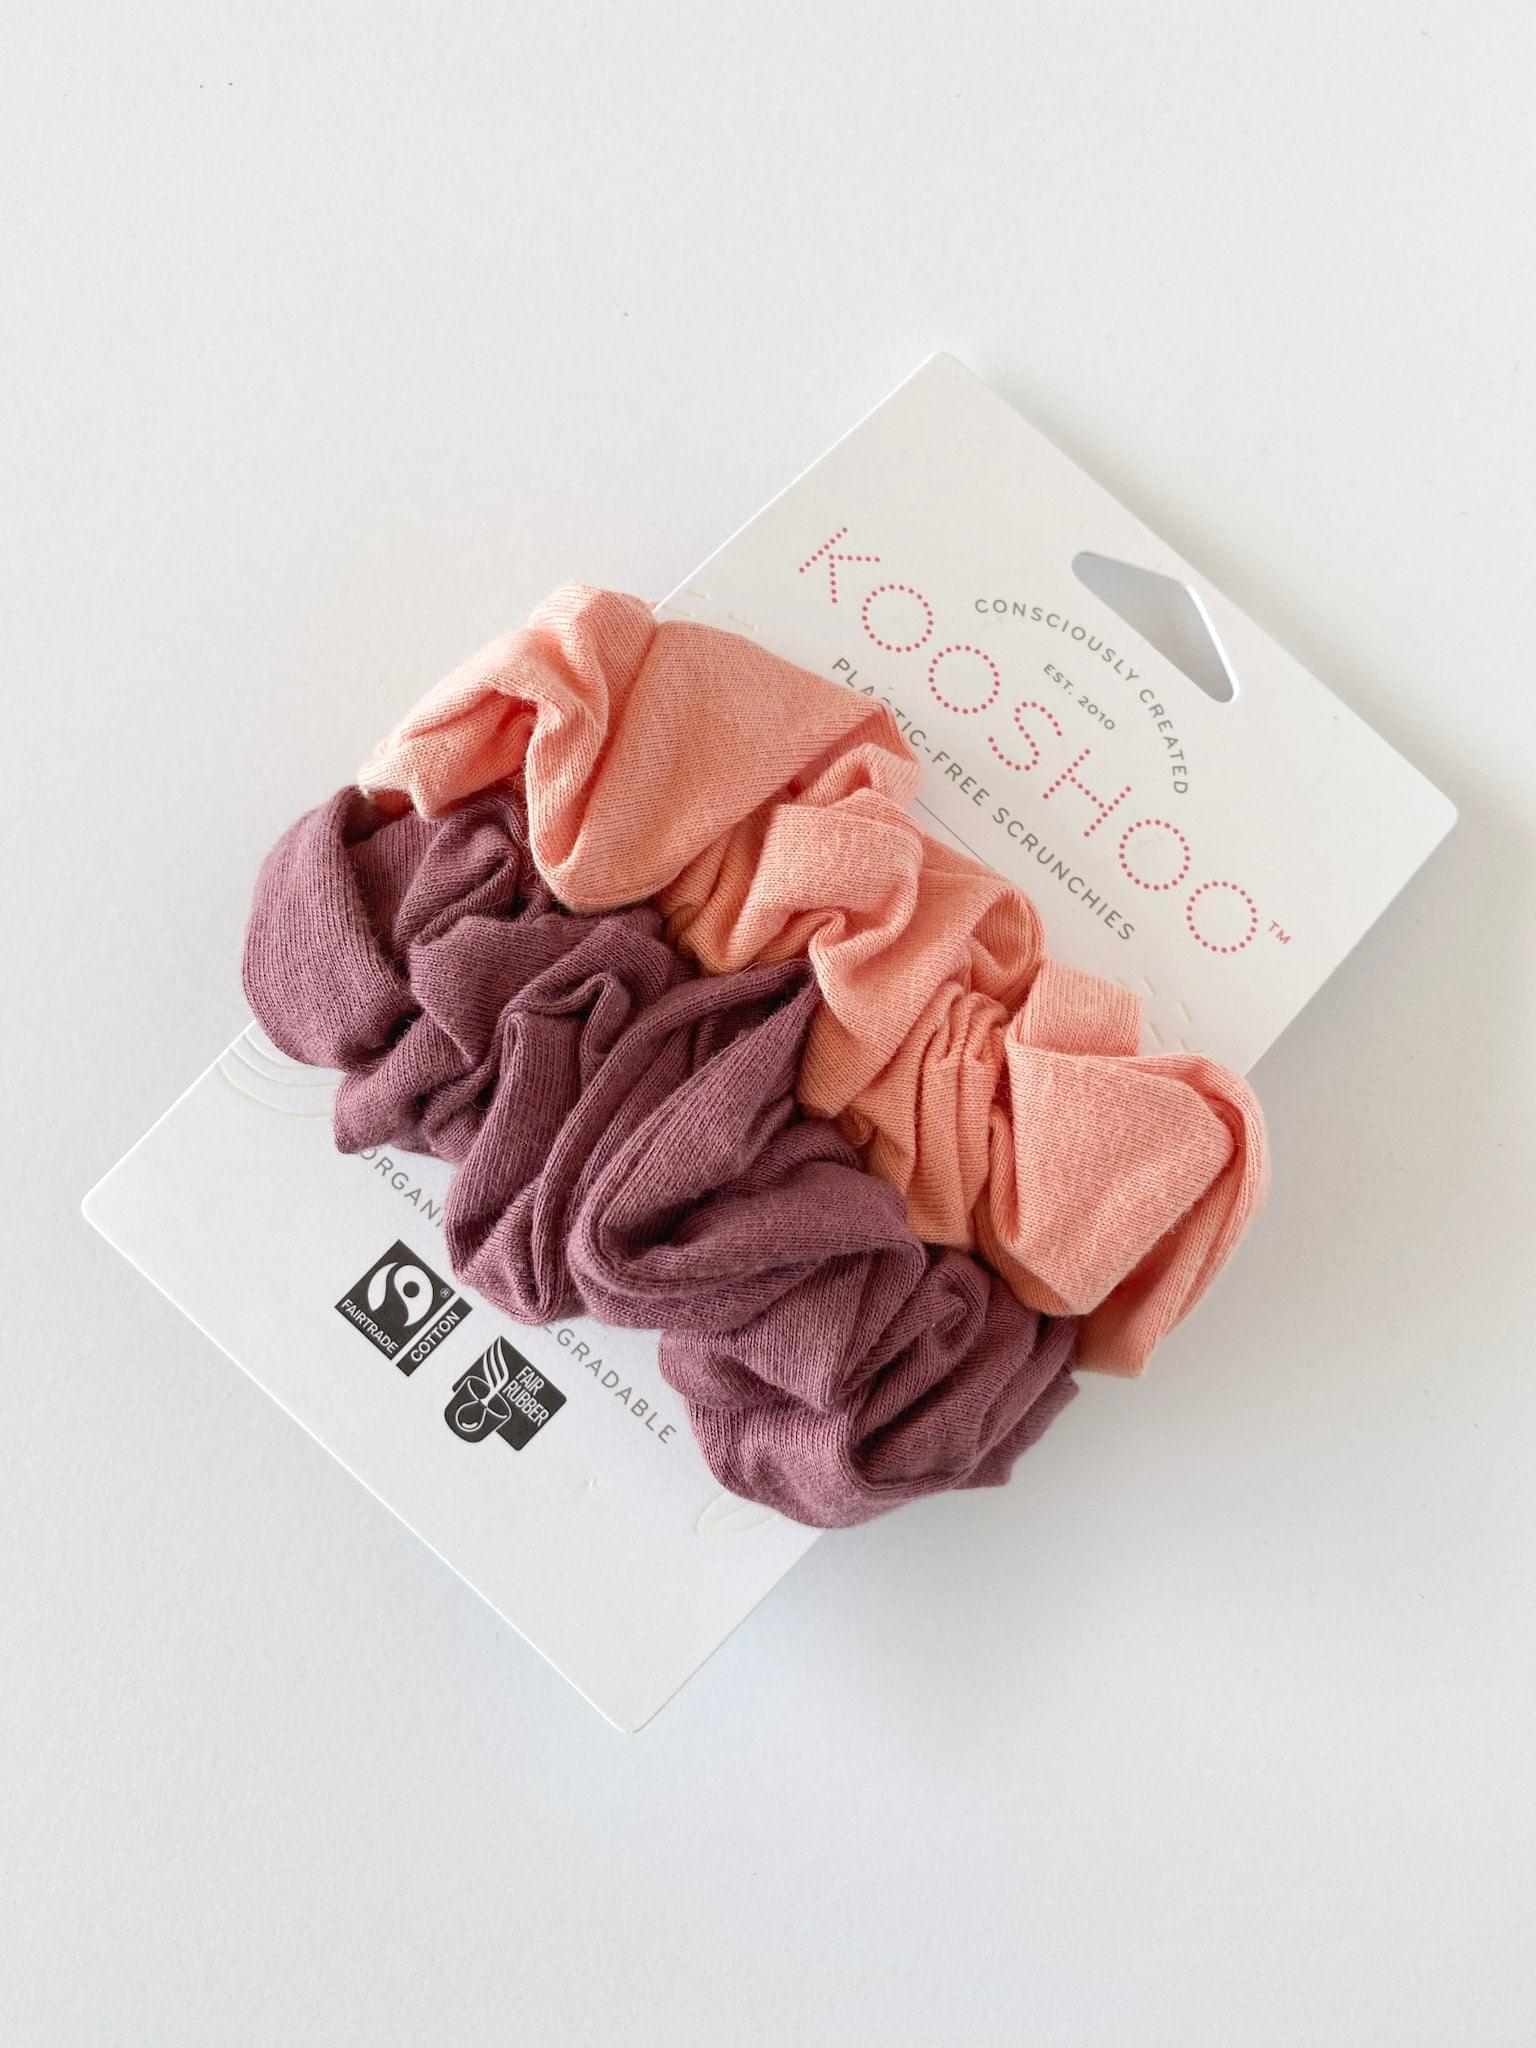 KOOSHOO Plastic-free Scrunchies - Coral Rose - BeFreeDaily